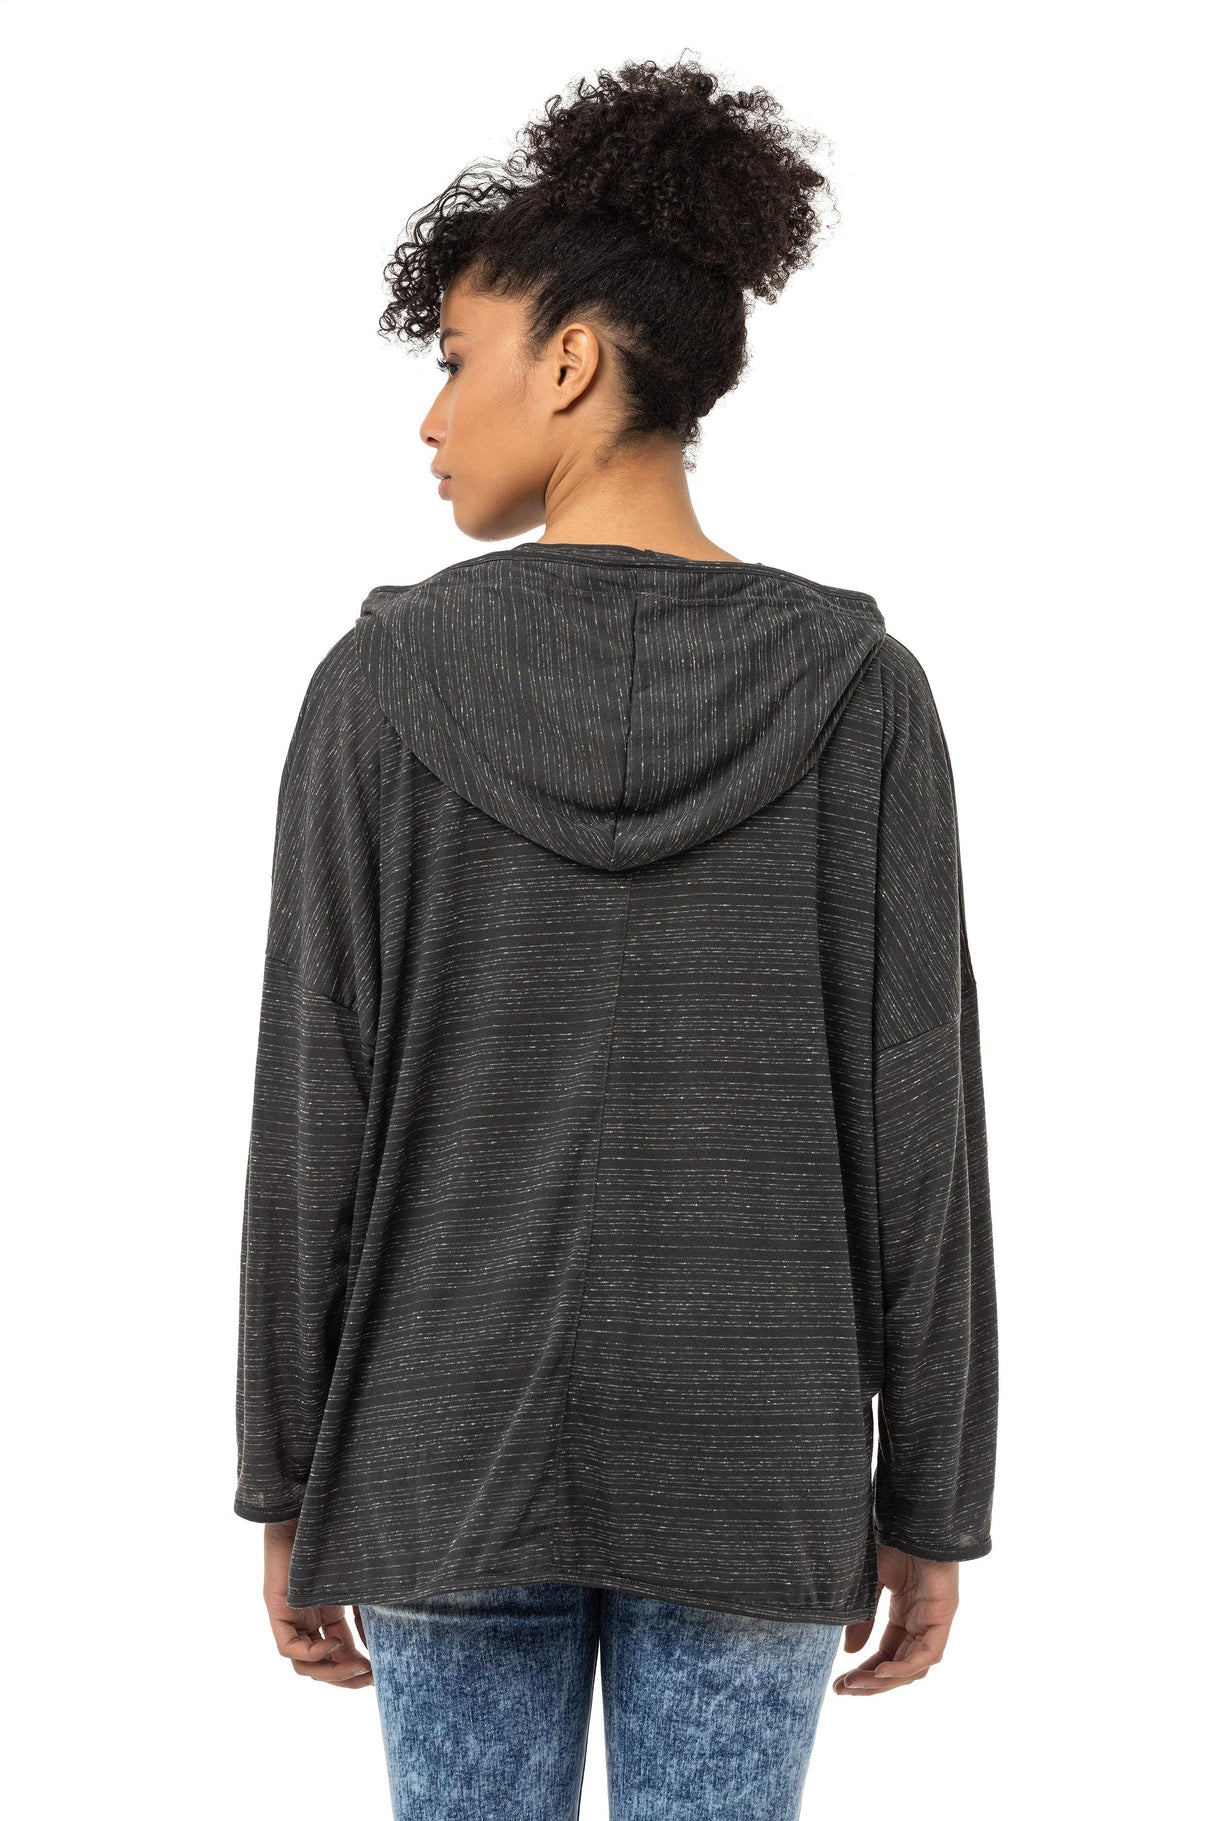 WL357 Basic Kadın Sweatshirt